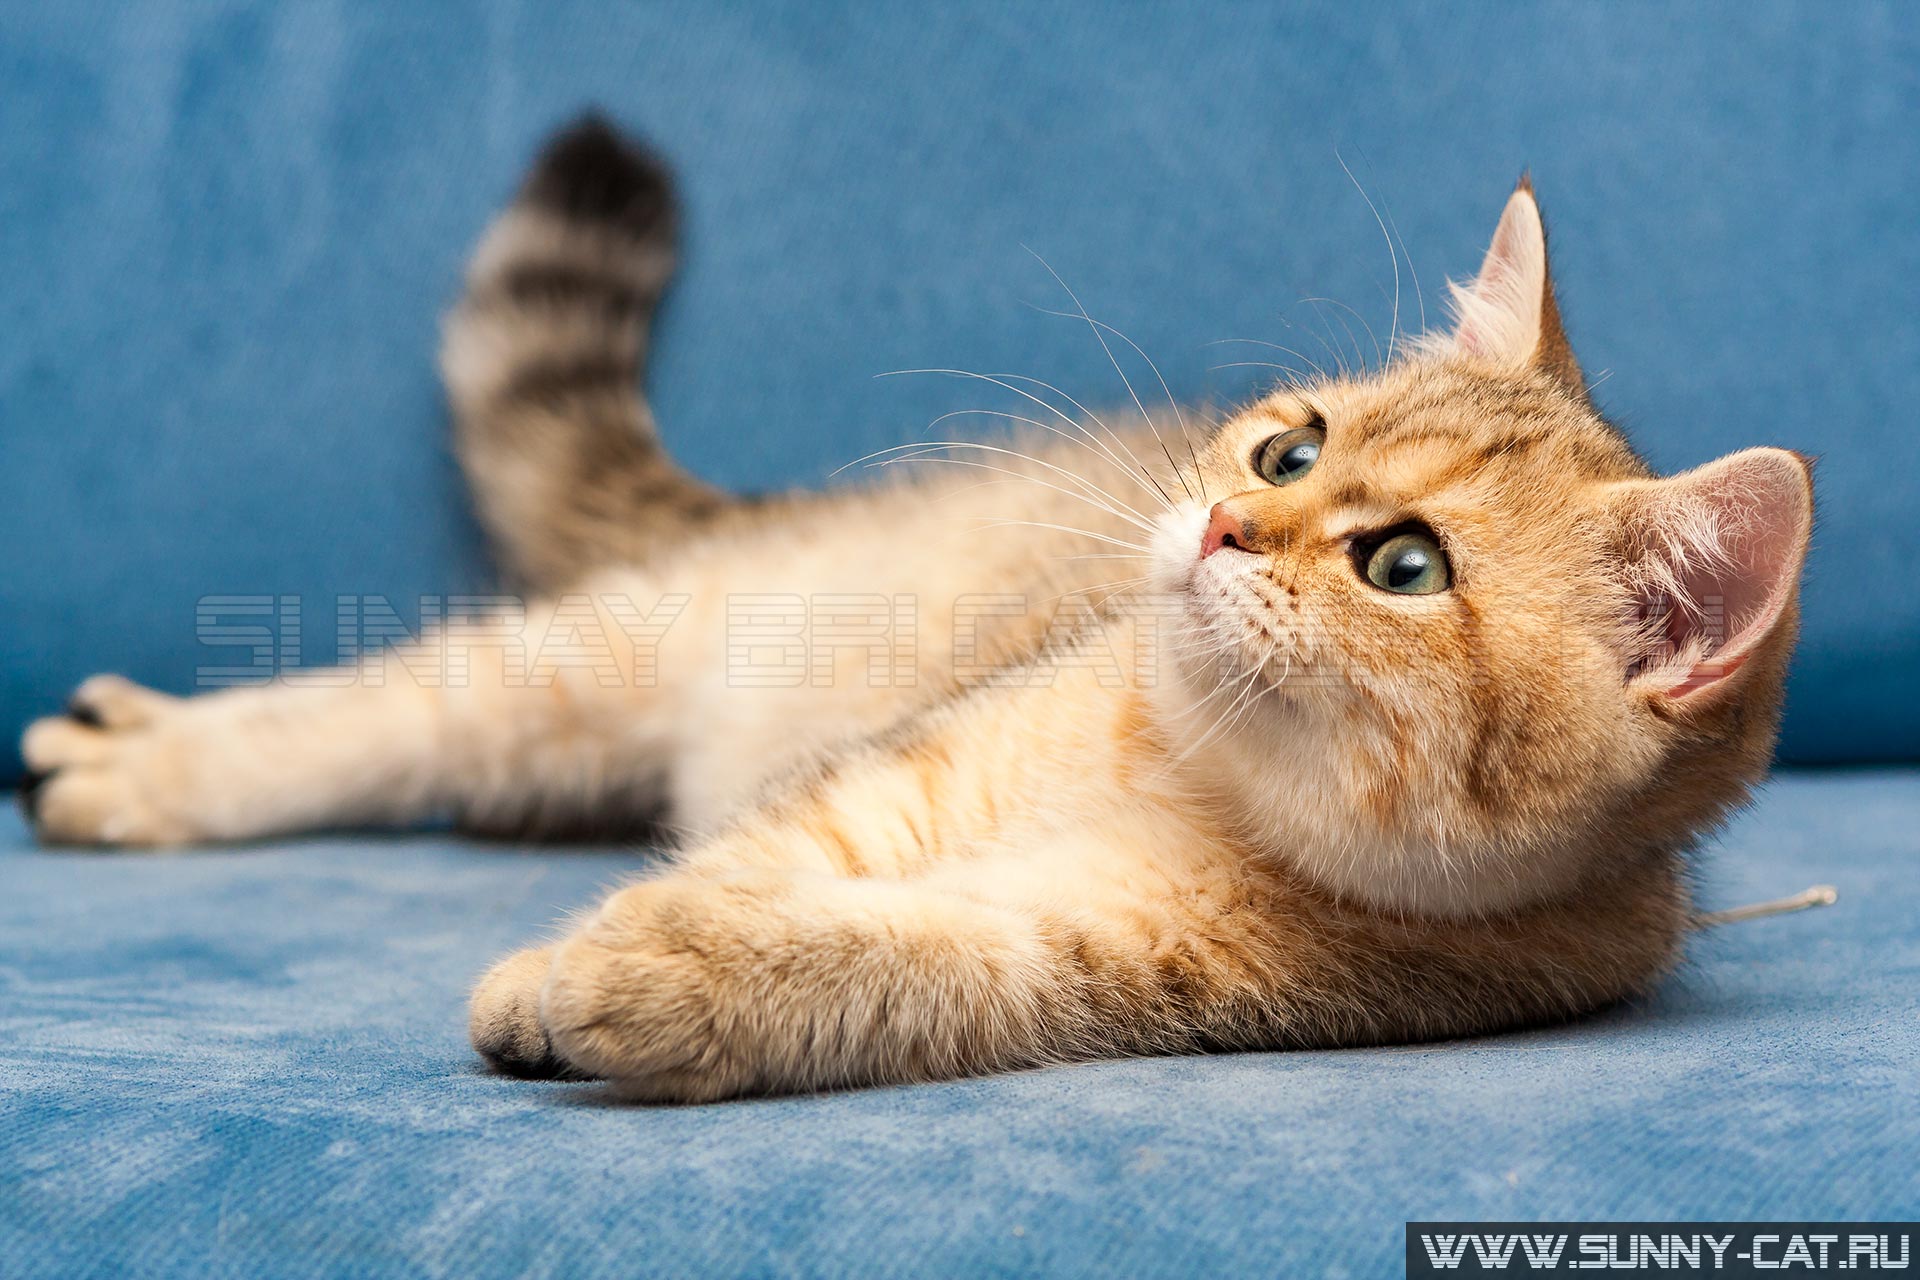 Молодая золотая британская кошка с зелеными глазами лежит на синем диване и смотрит вверх